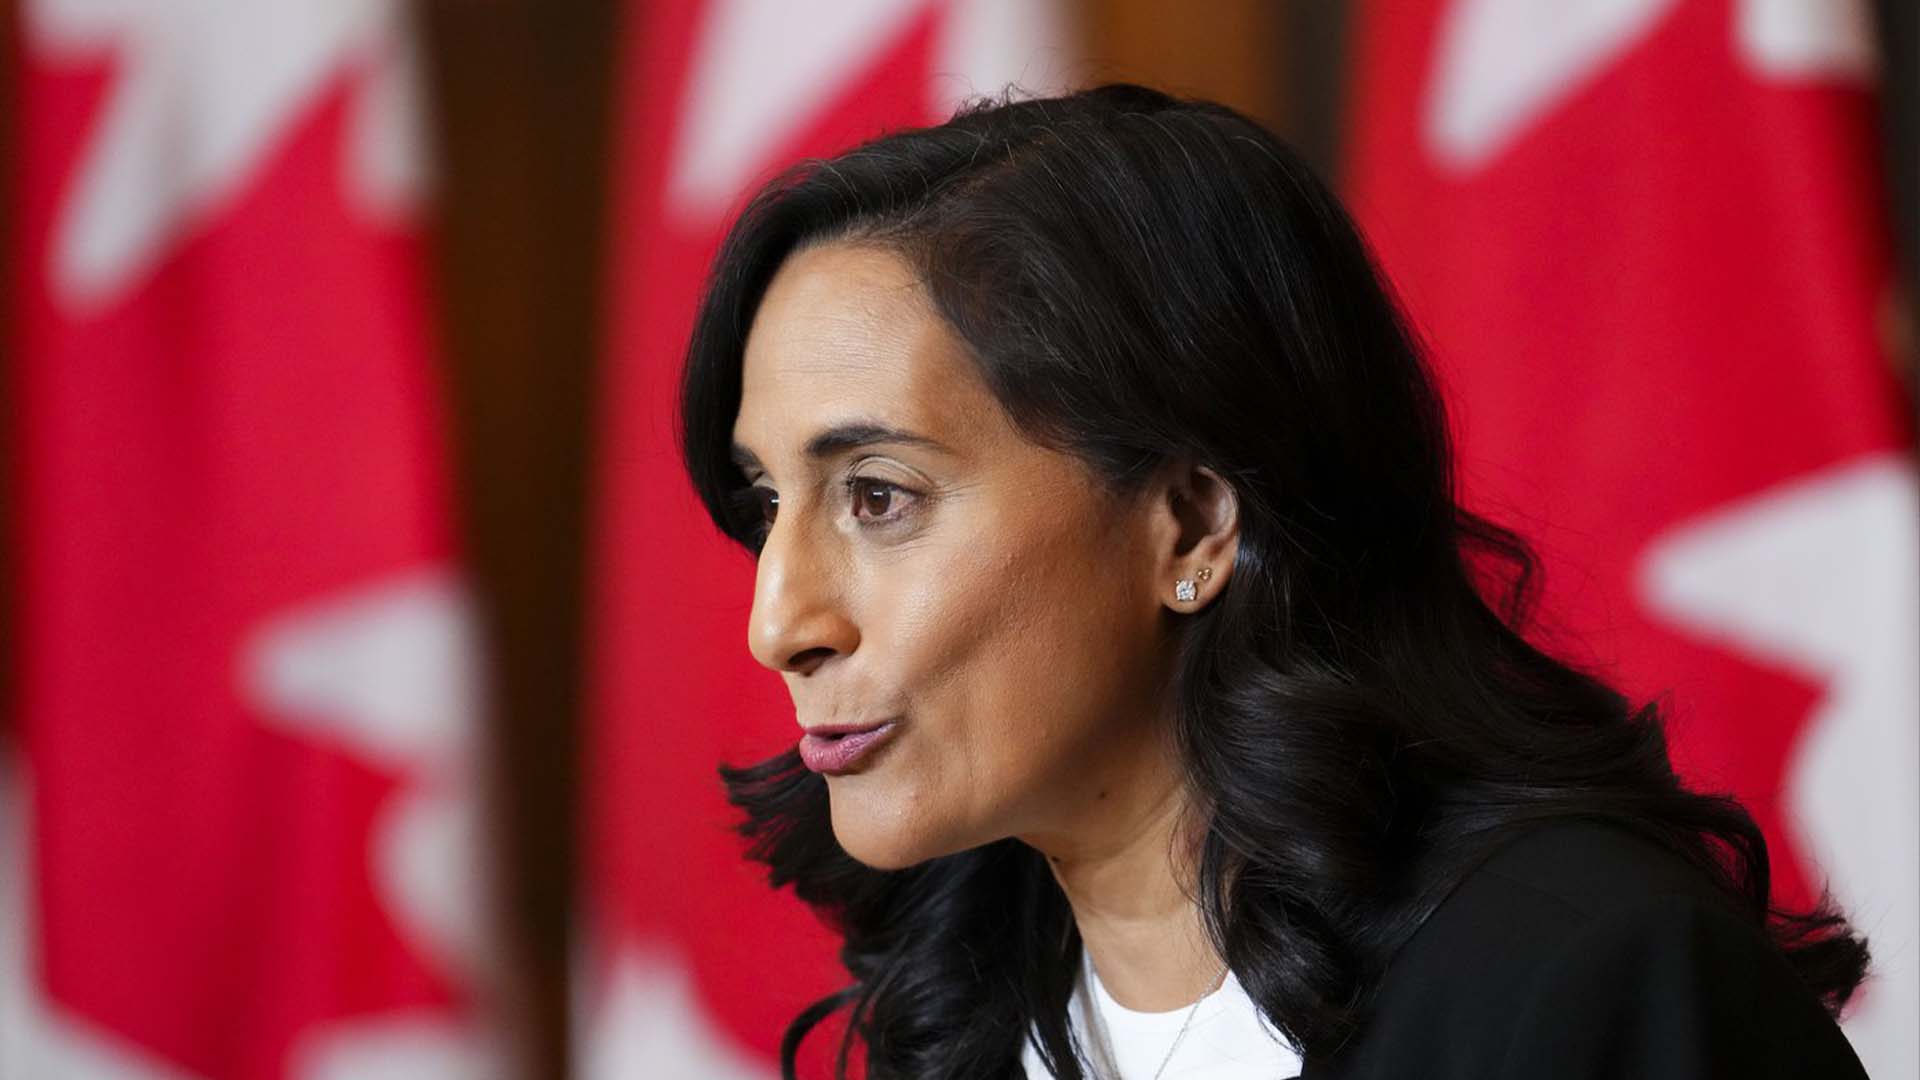 La ministre de la Défense nationale Anita Anand tient une conférence de presse à Ottawa le mardi 27 septembre 2022.